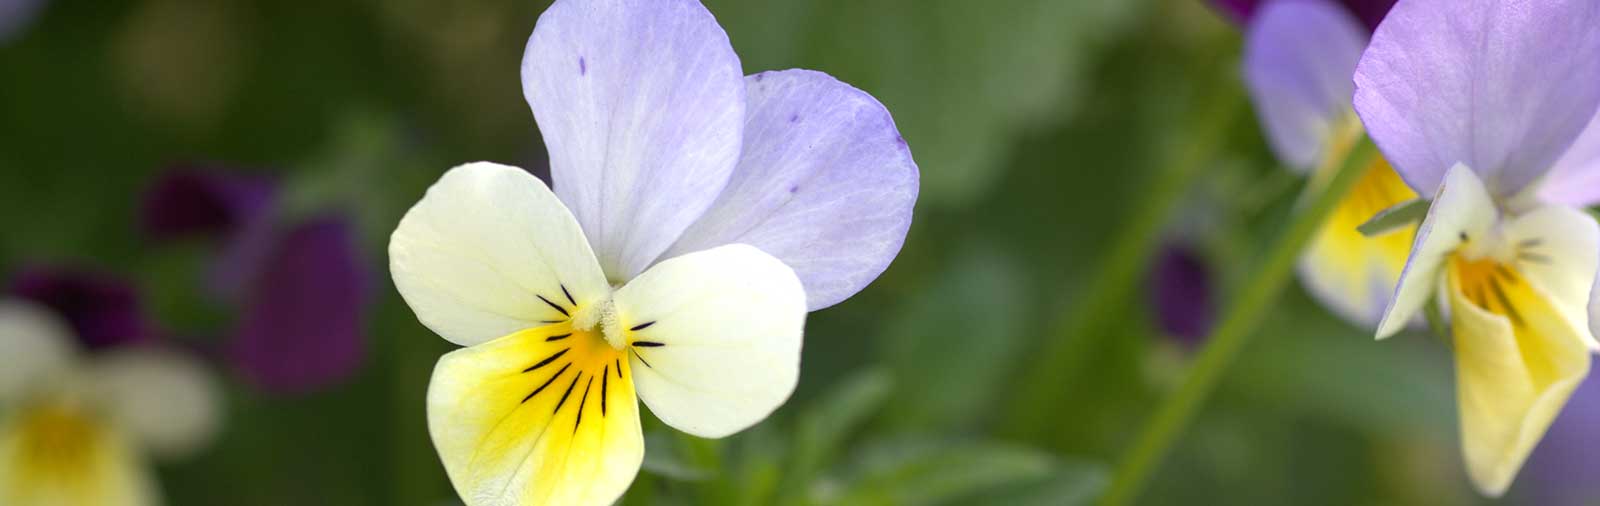 Stiefmütterchen - Viola tricolor L.